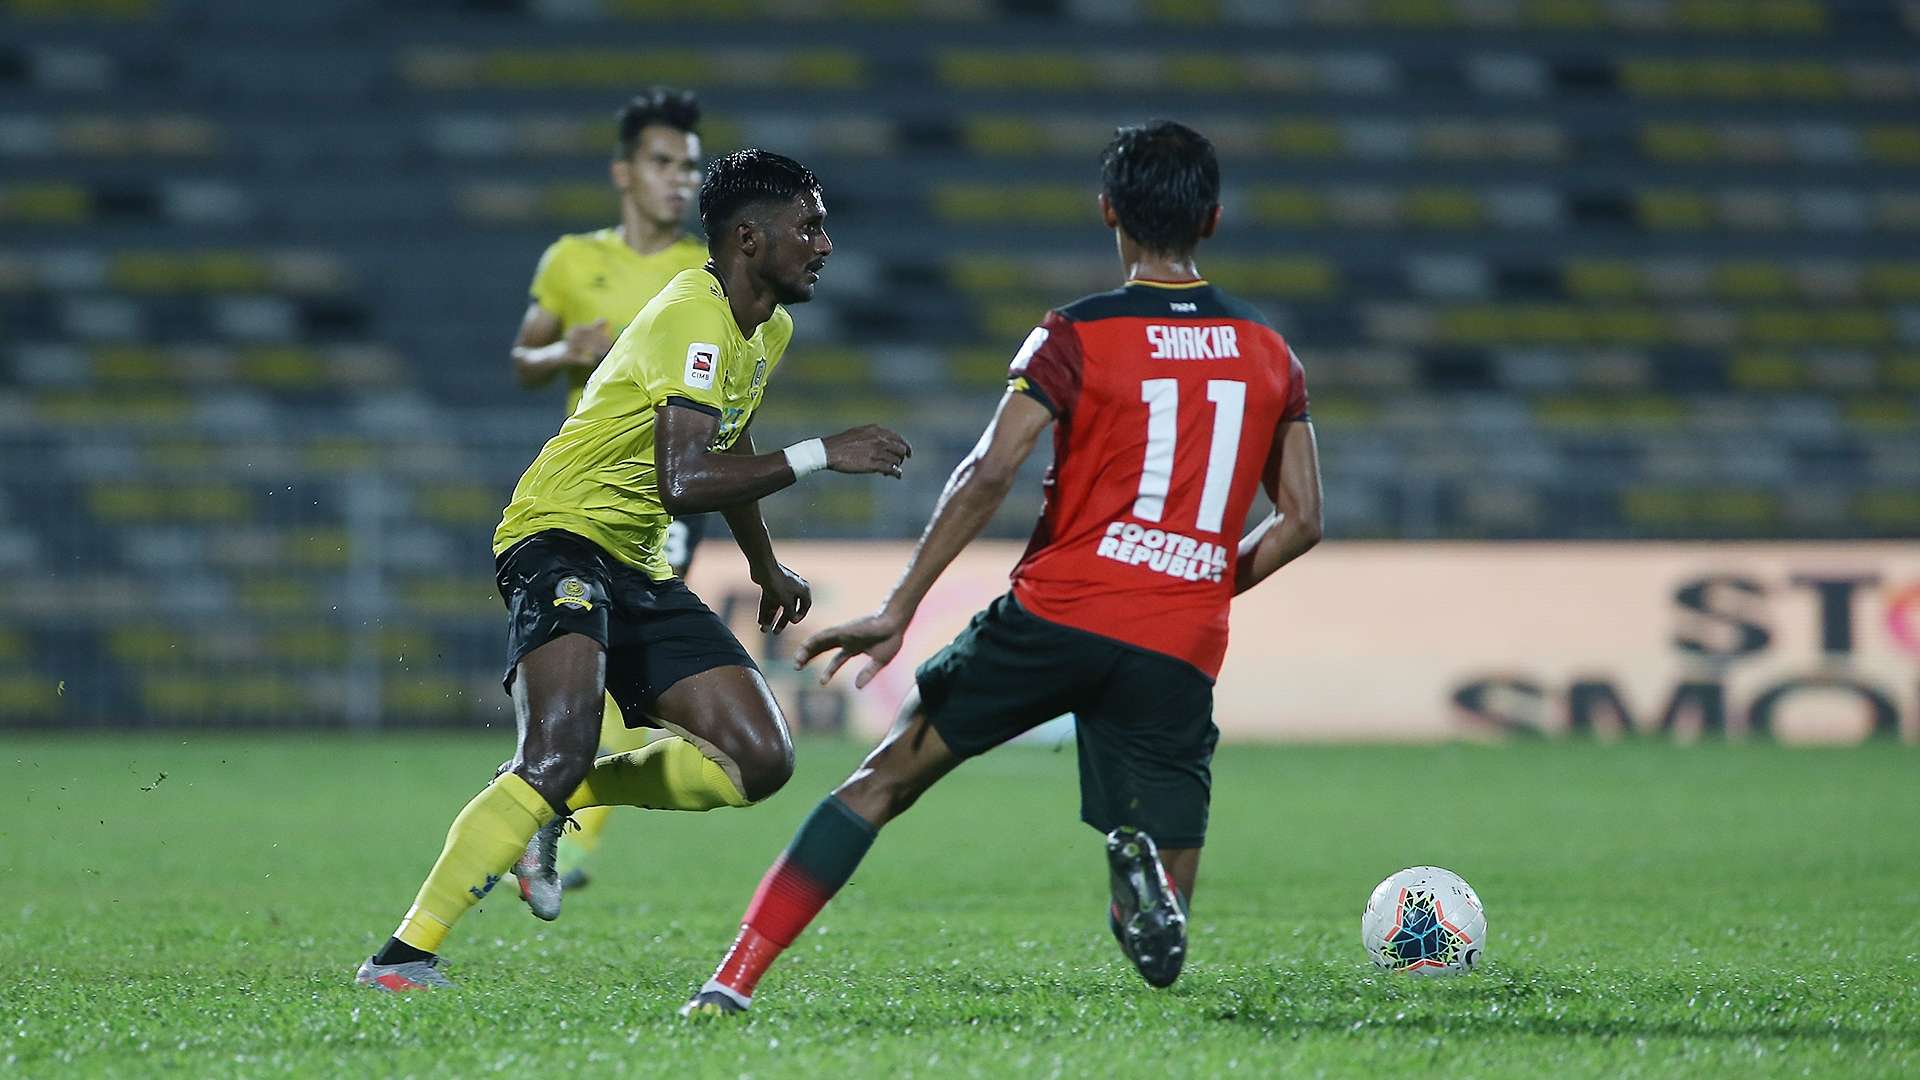 J. Partiban, Shakir Hamzah, Perak v Kedah, Super League, 11 Oct 2020